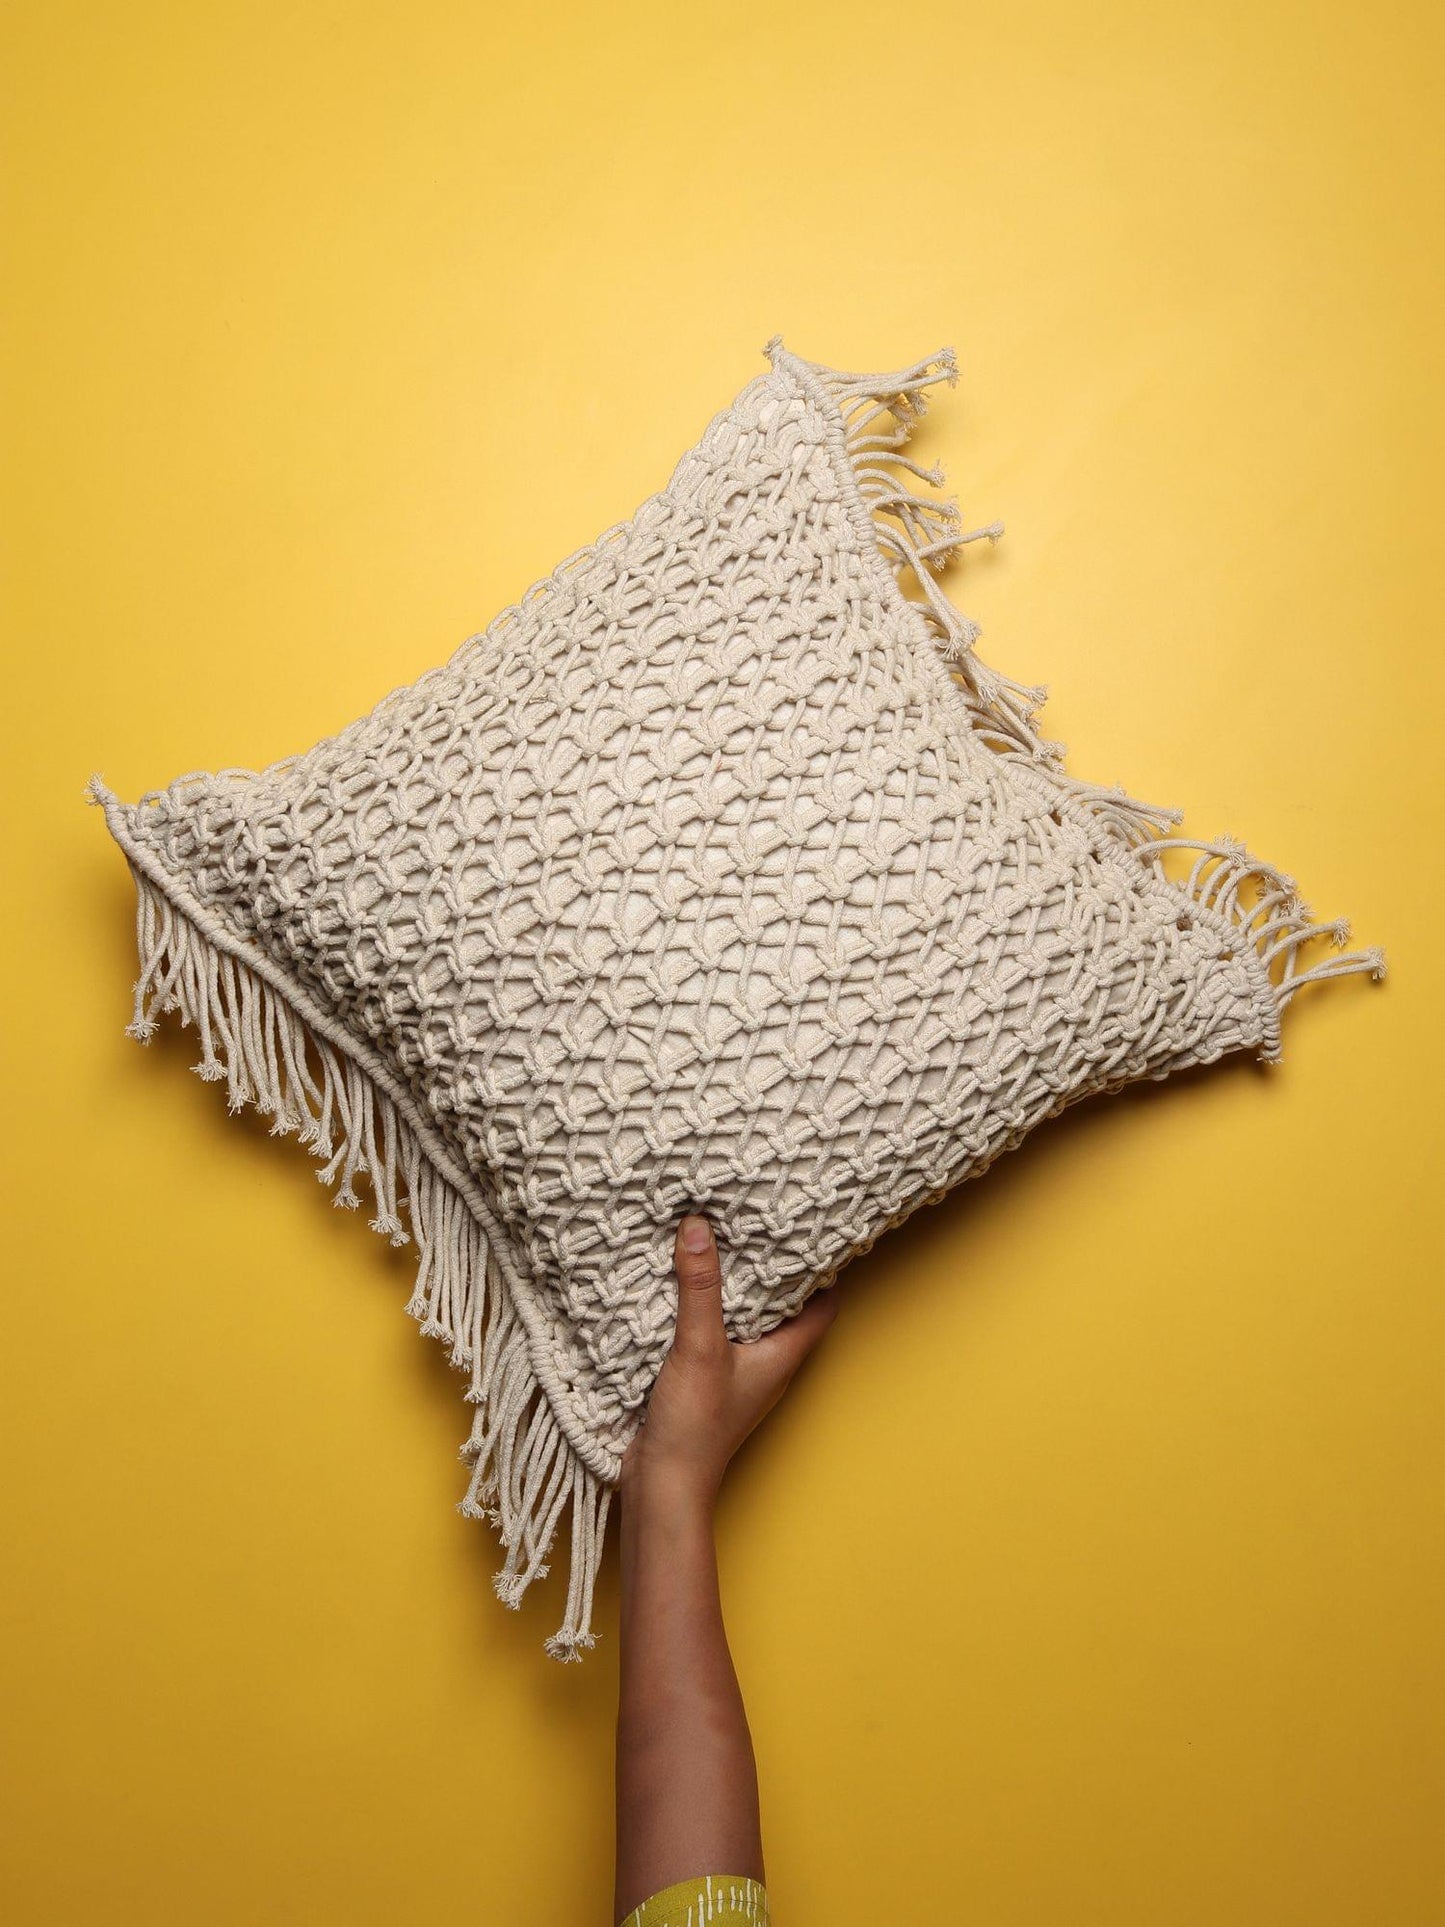 Handgewebter Kissenbezug aus Baumwolle